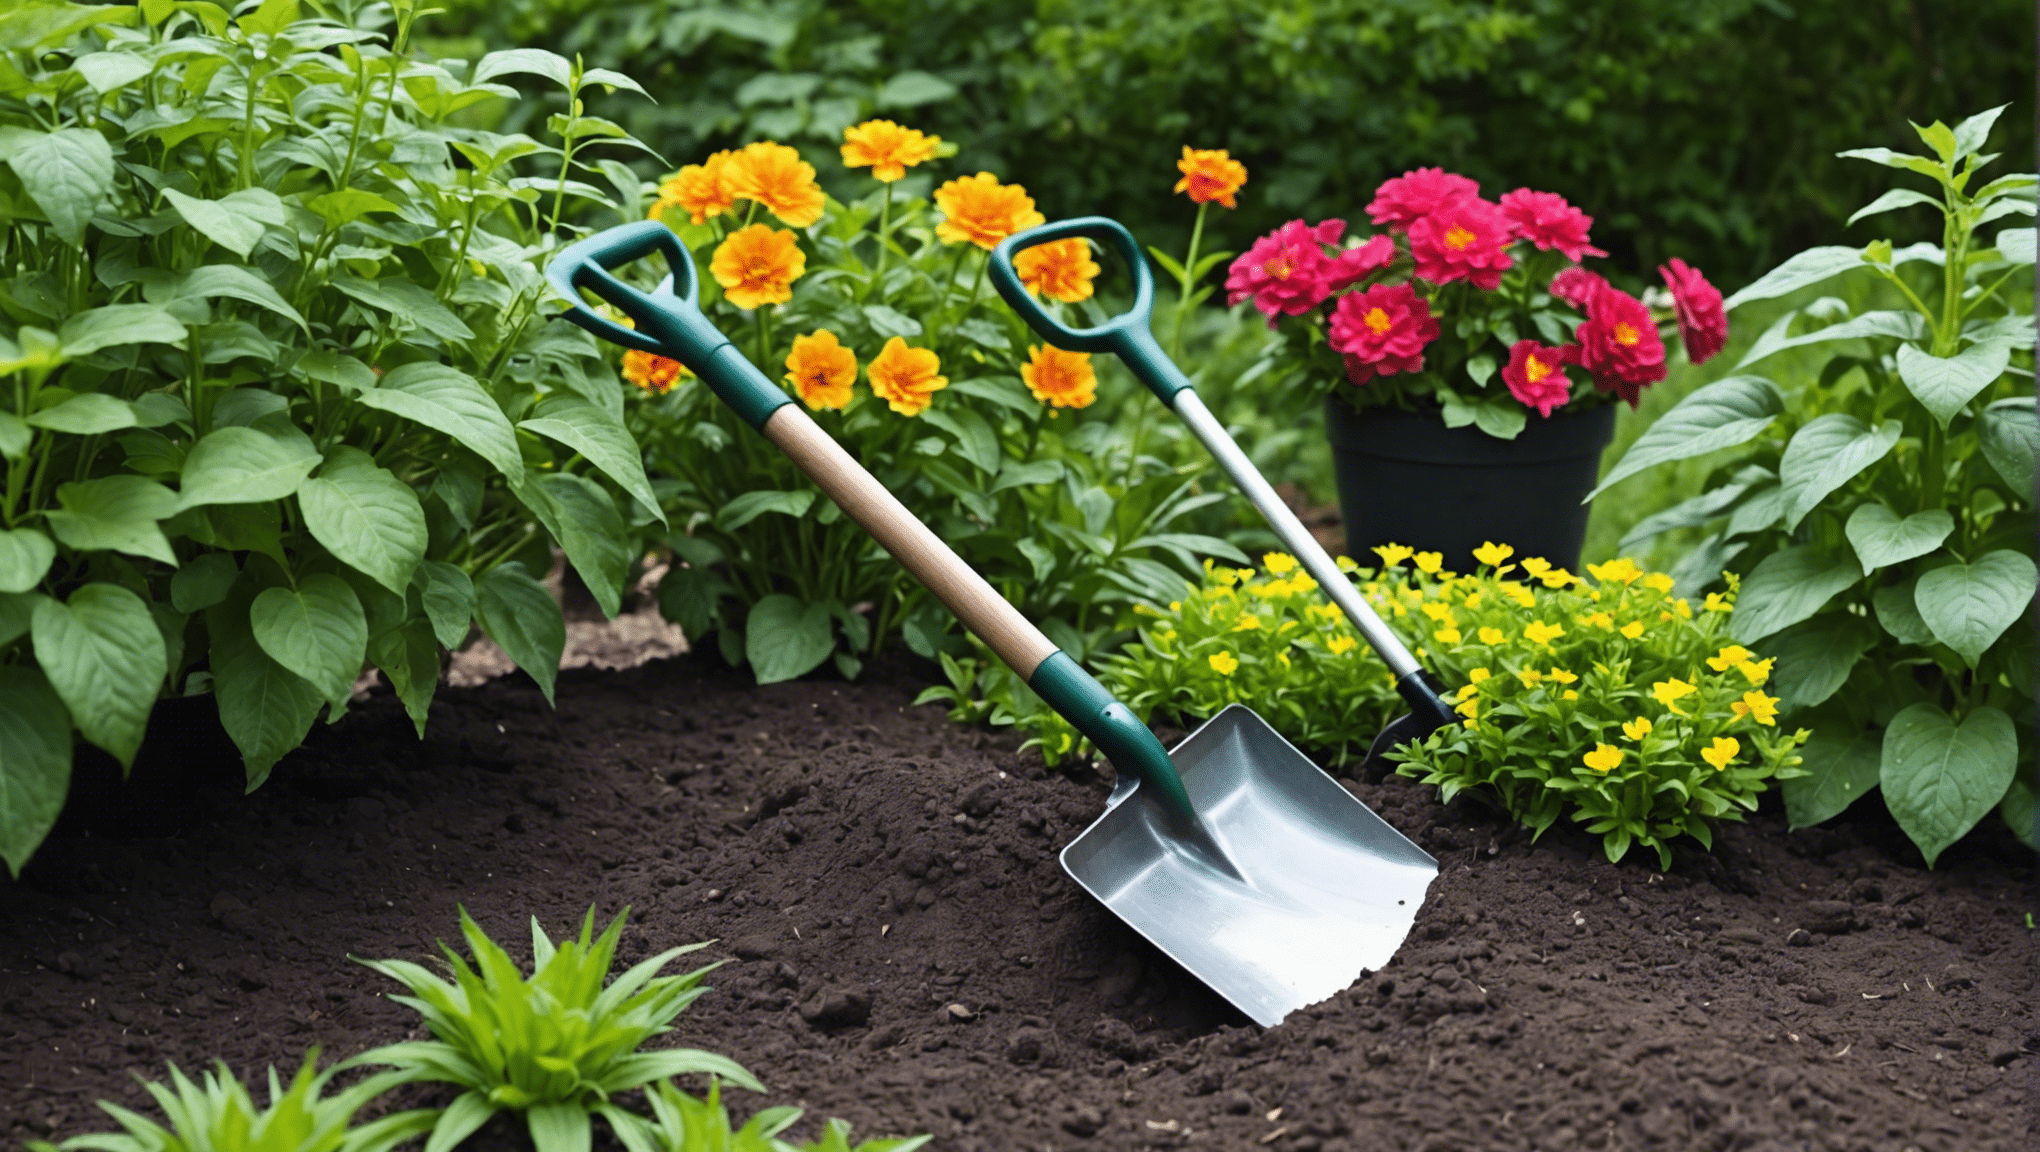 Finden Sie in unserer Auswahl hochwertiger, langlebiger Werkzeuge die ideale kleine Gartenschaufel für alle Ihre Gartenbedürfnisse.